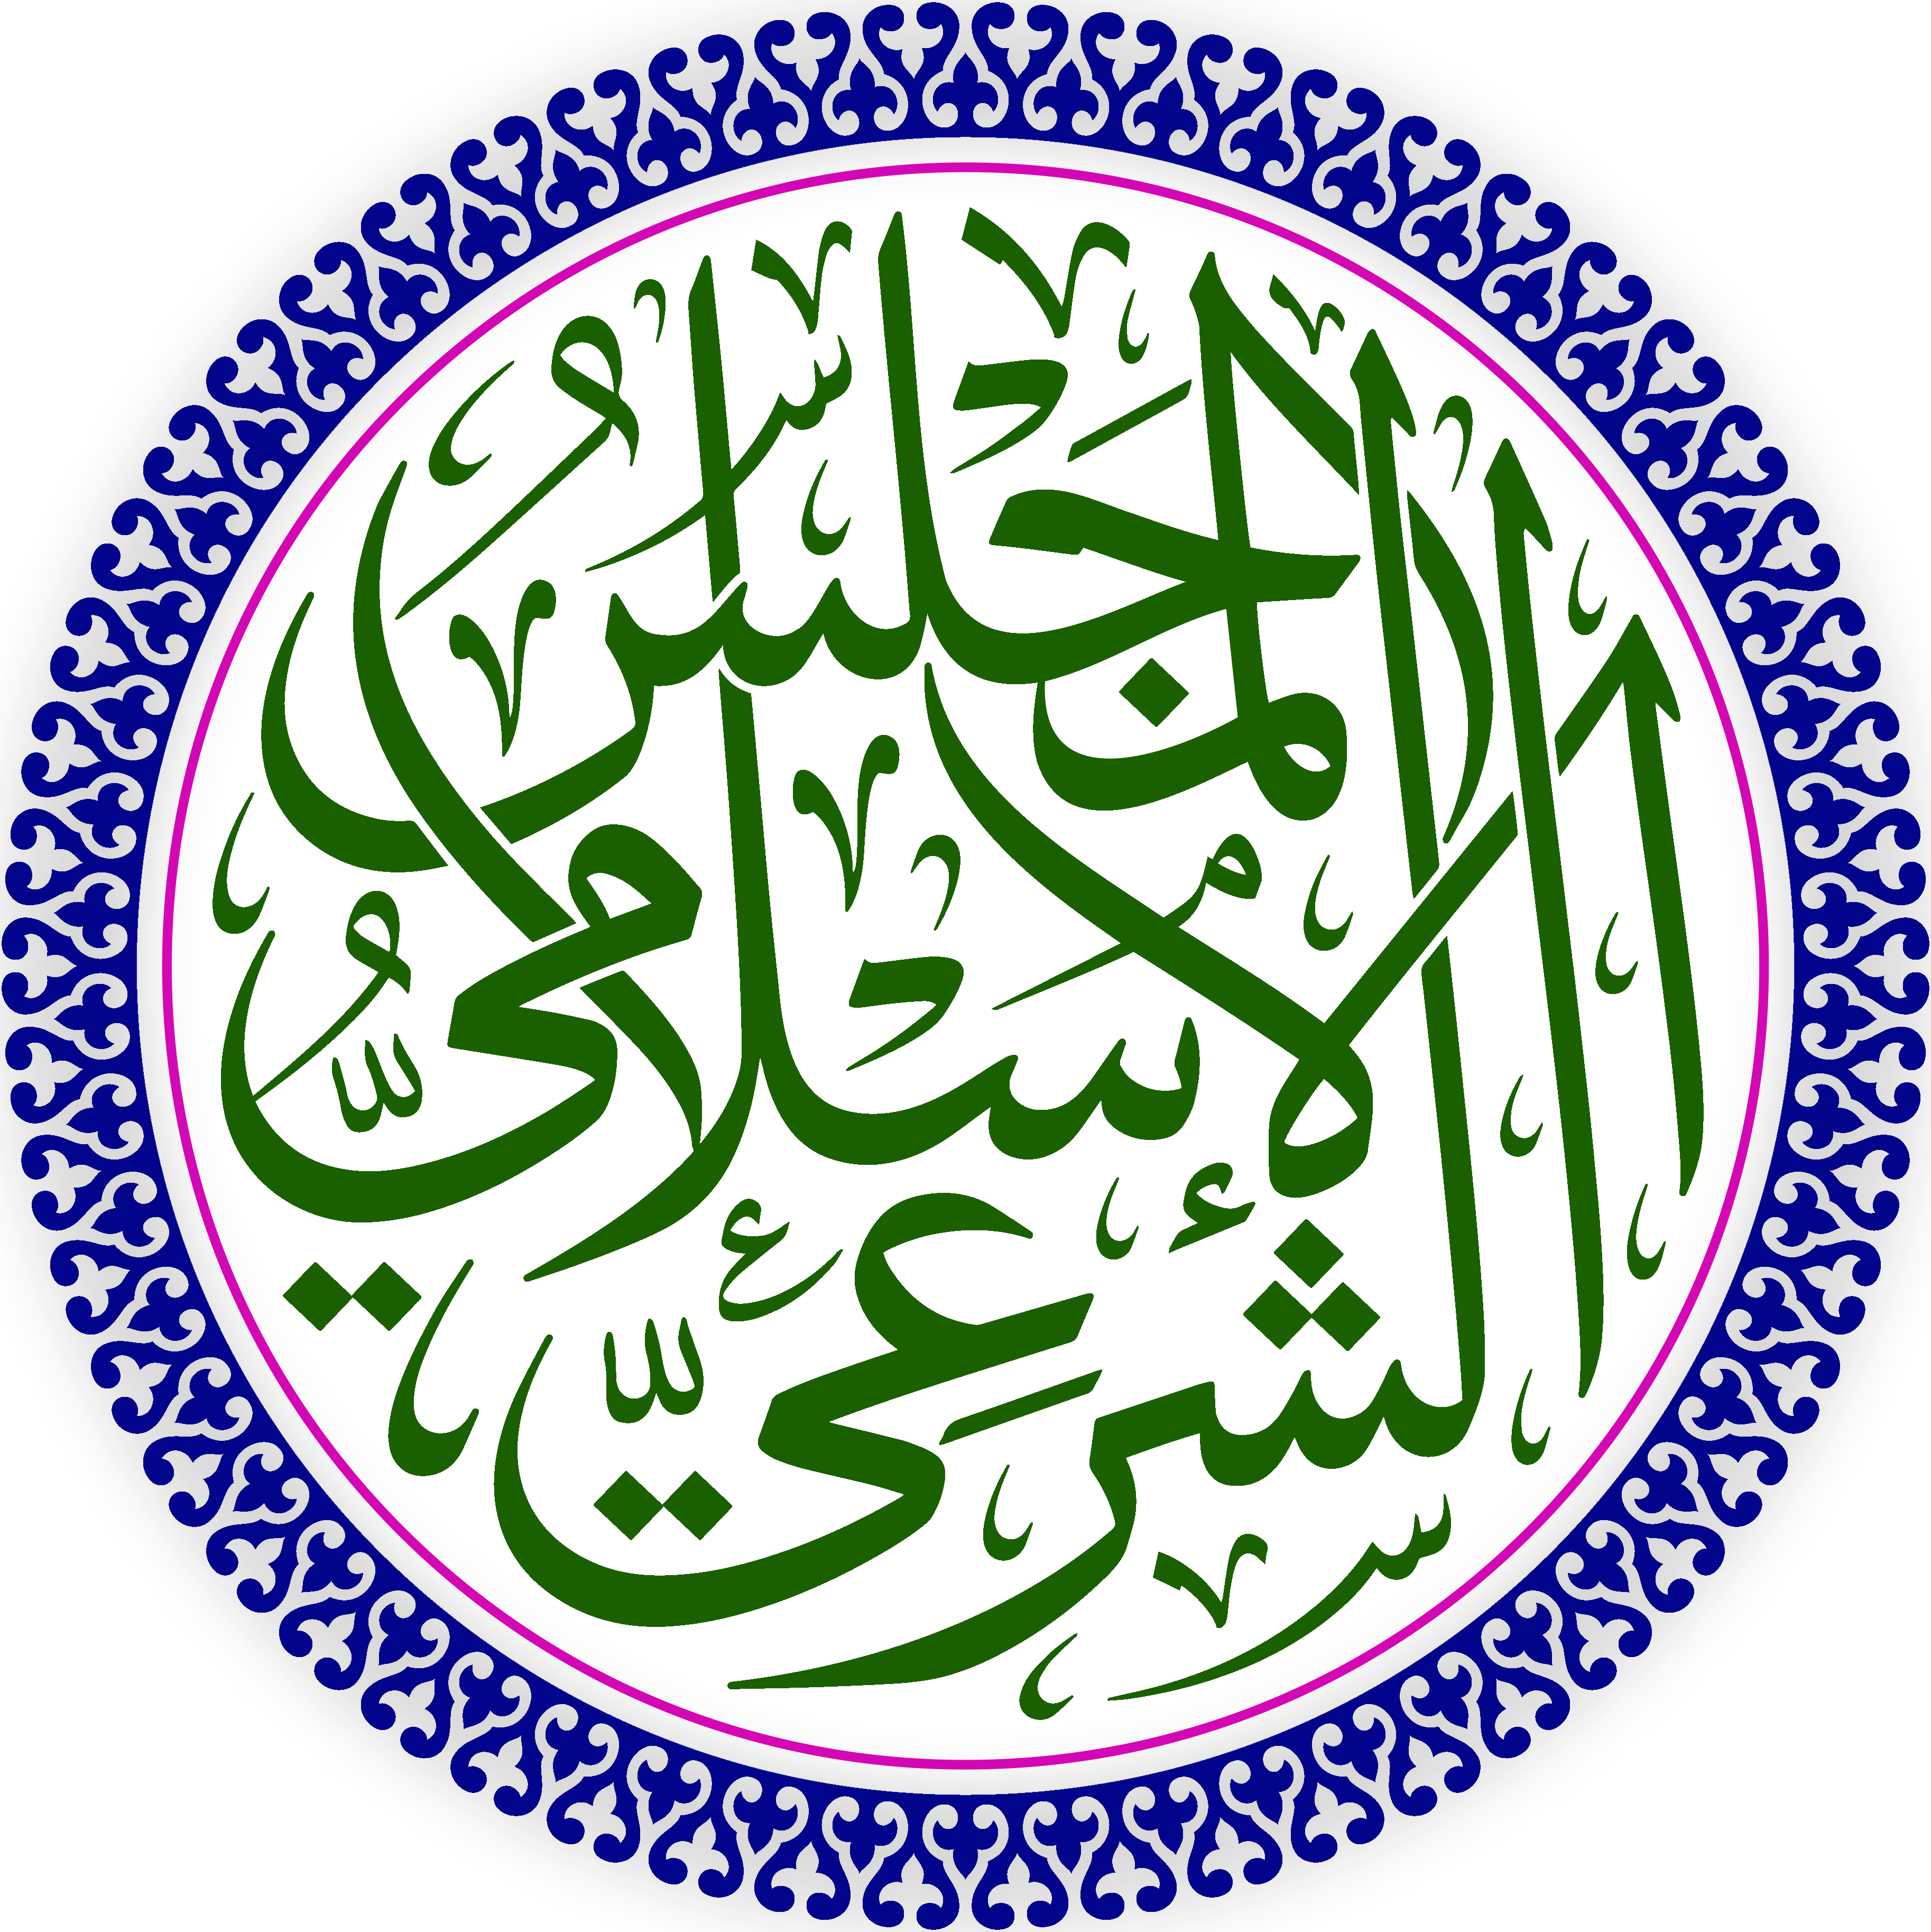 The Islamic Sharia Council North